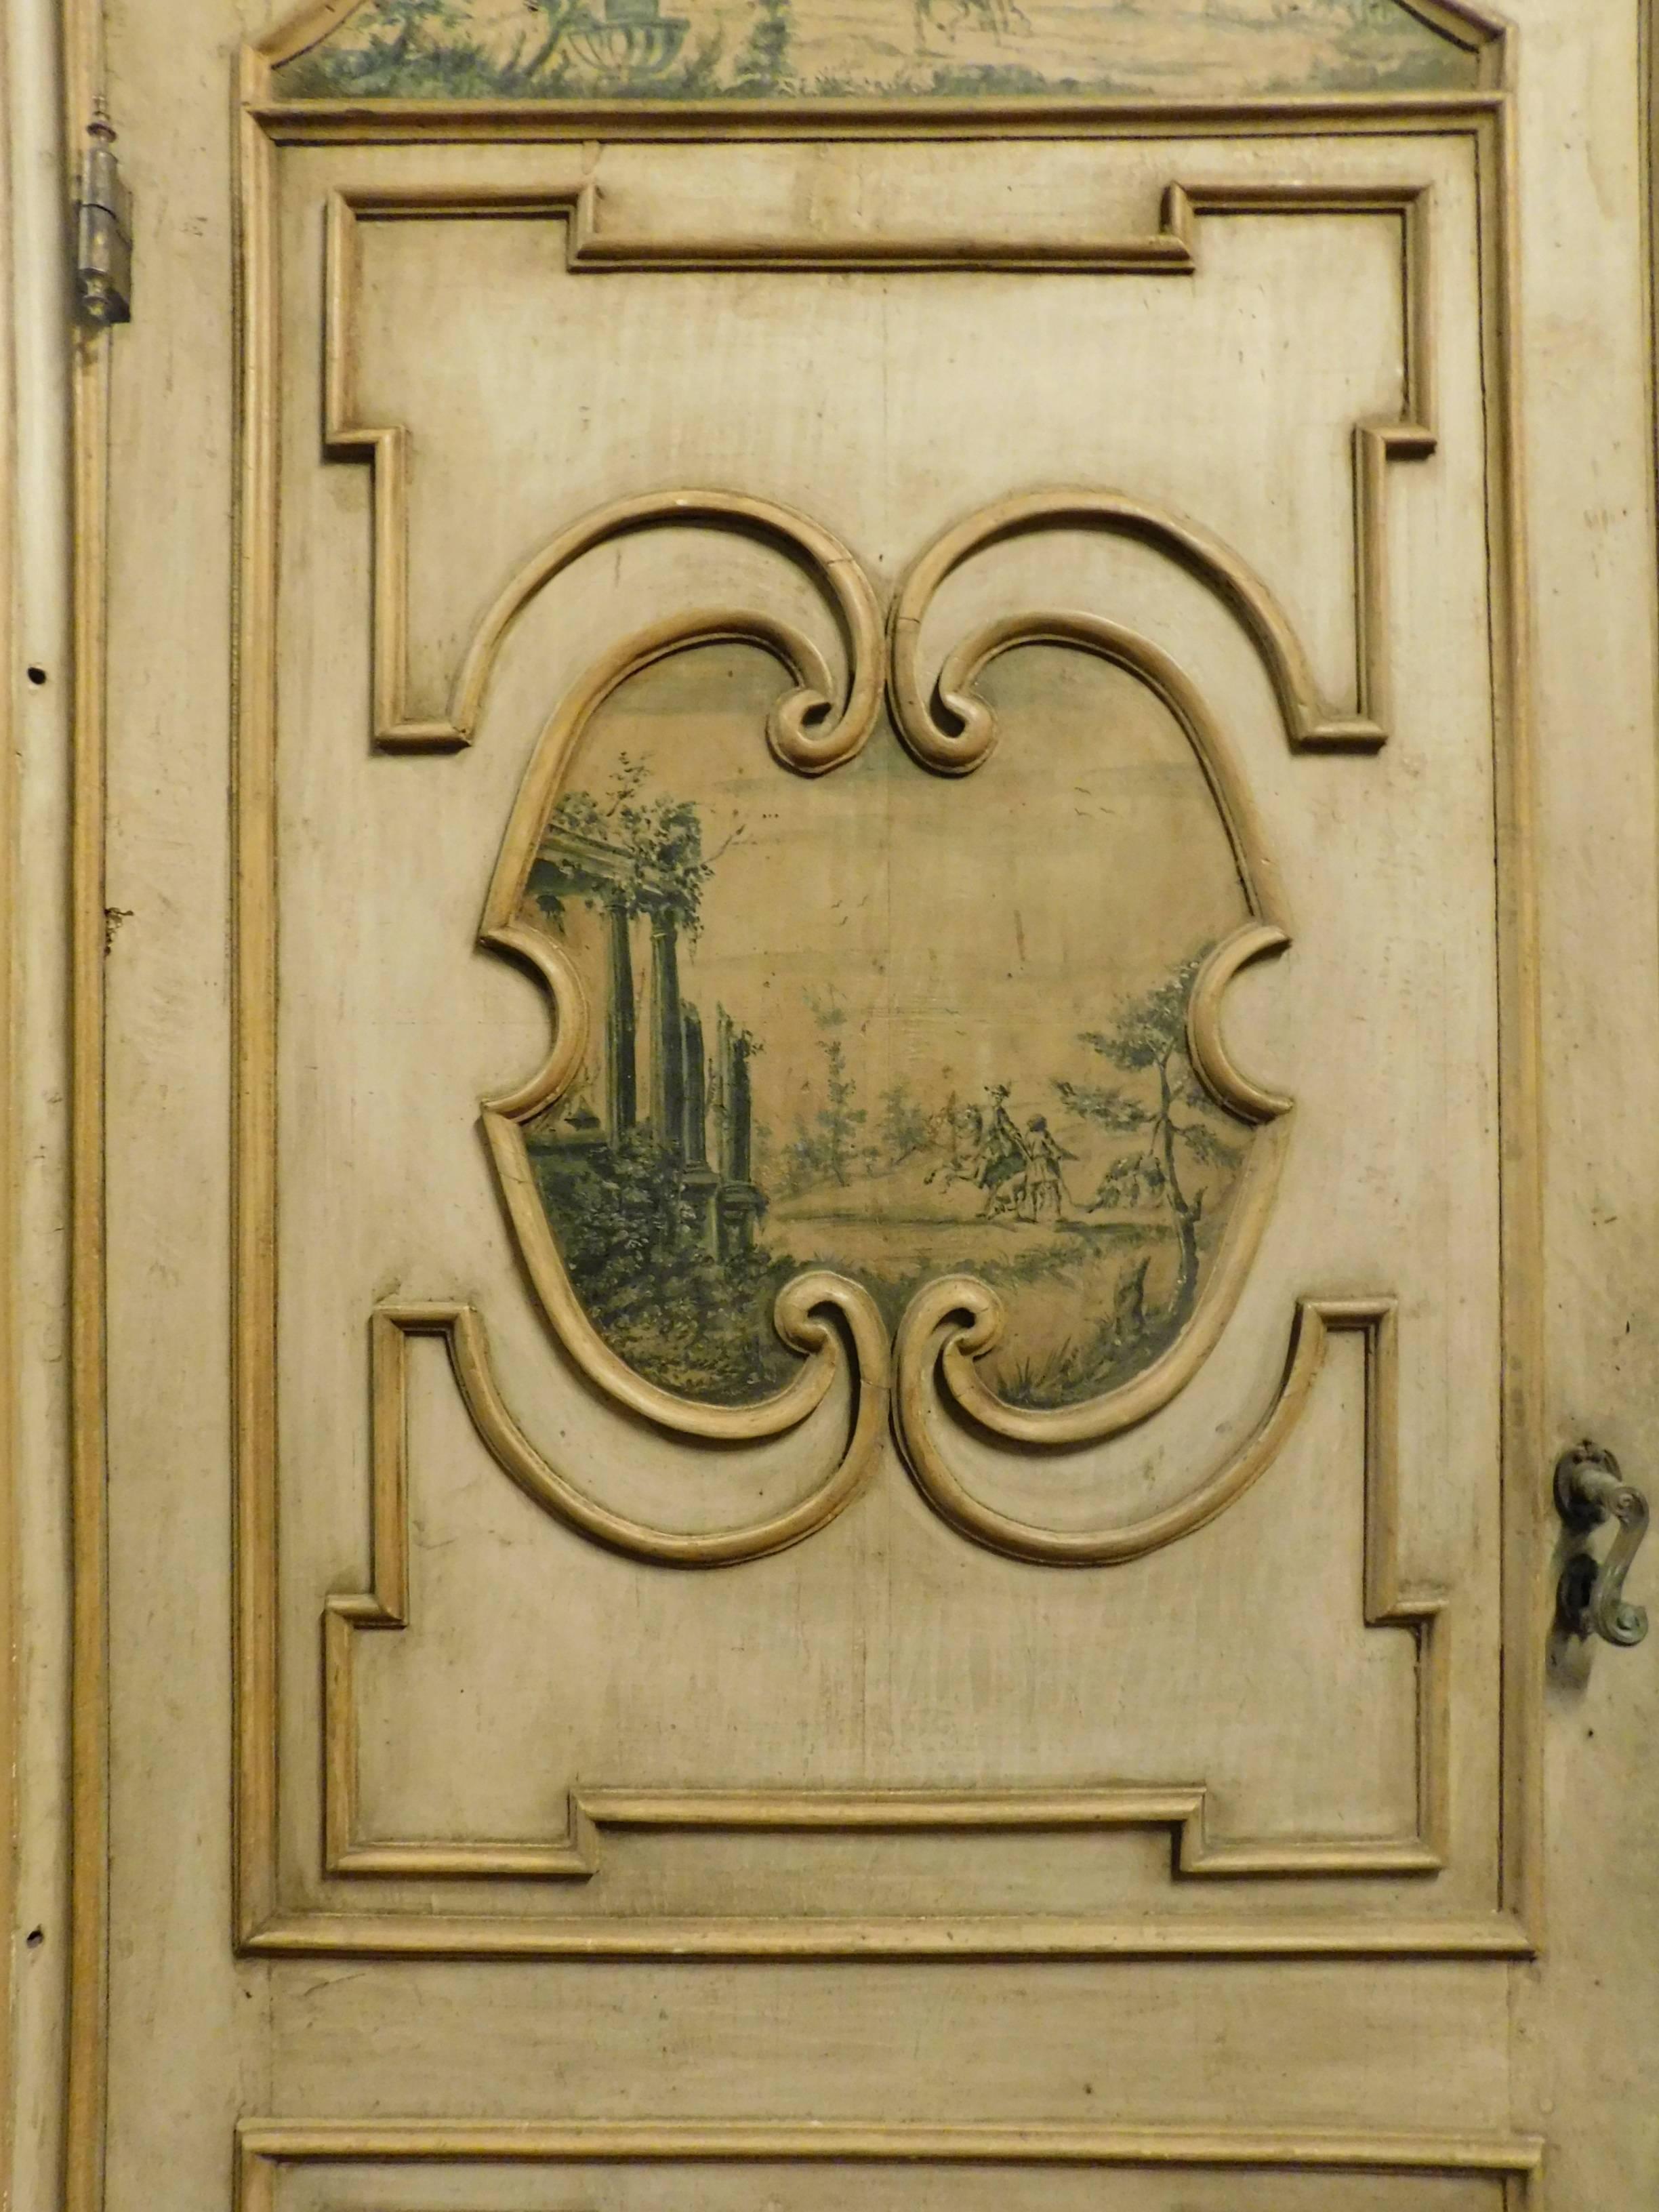 Porte laquée du 18ème siècle 
Peint sur les deux faces
Dimensions de la porte : 110 cm x 255 cm de hauteur
Dimensions du cadre : 138 cm x 270 cm de hauteur.